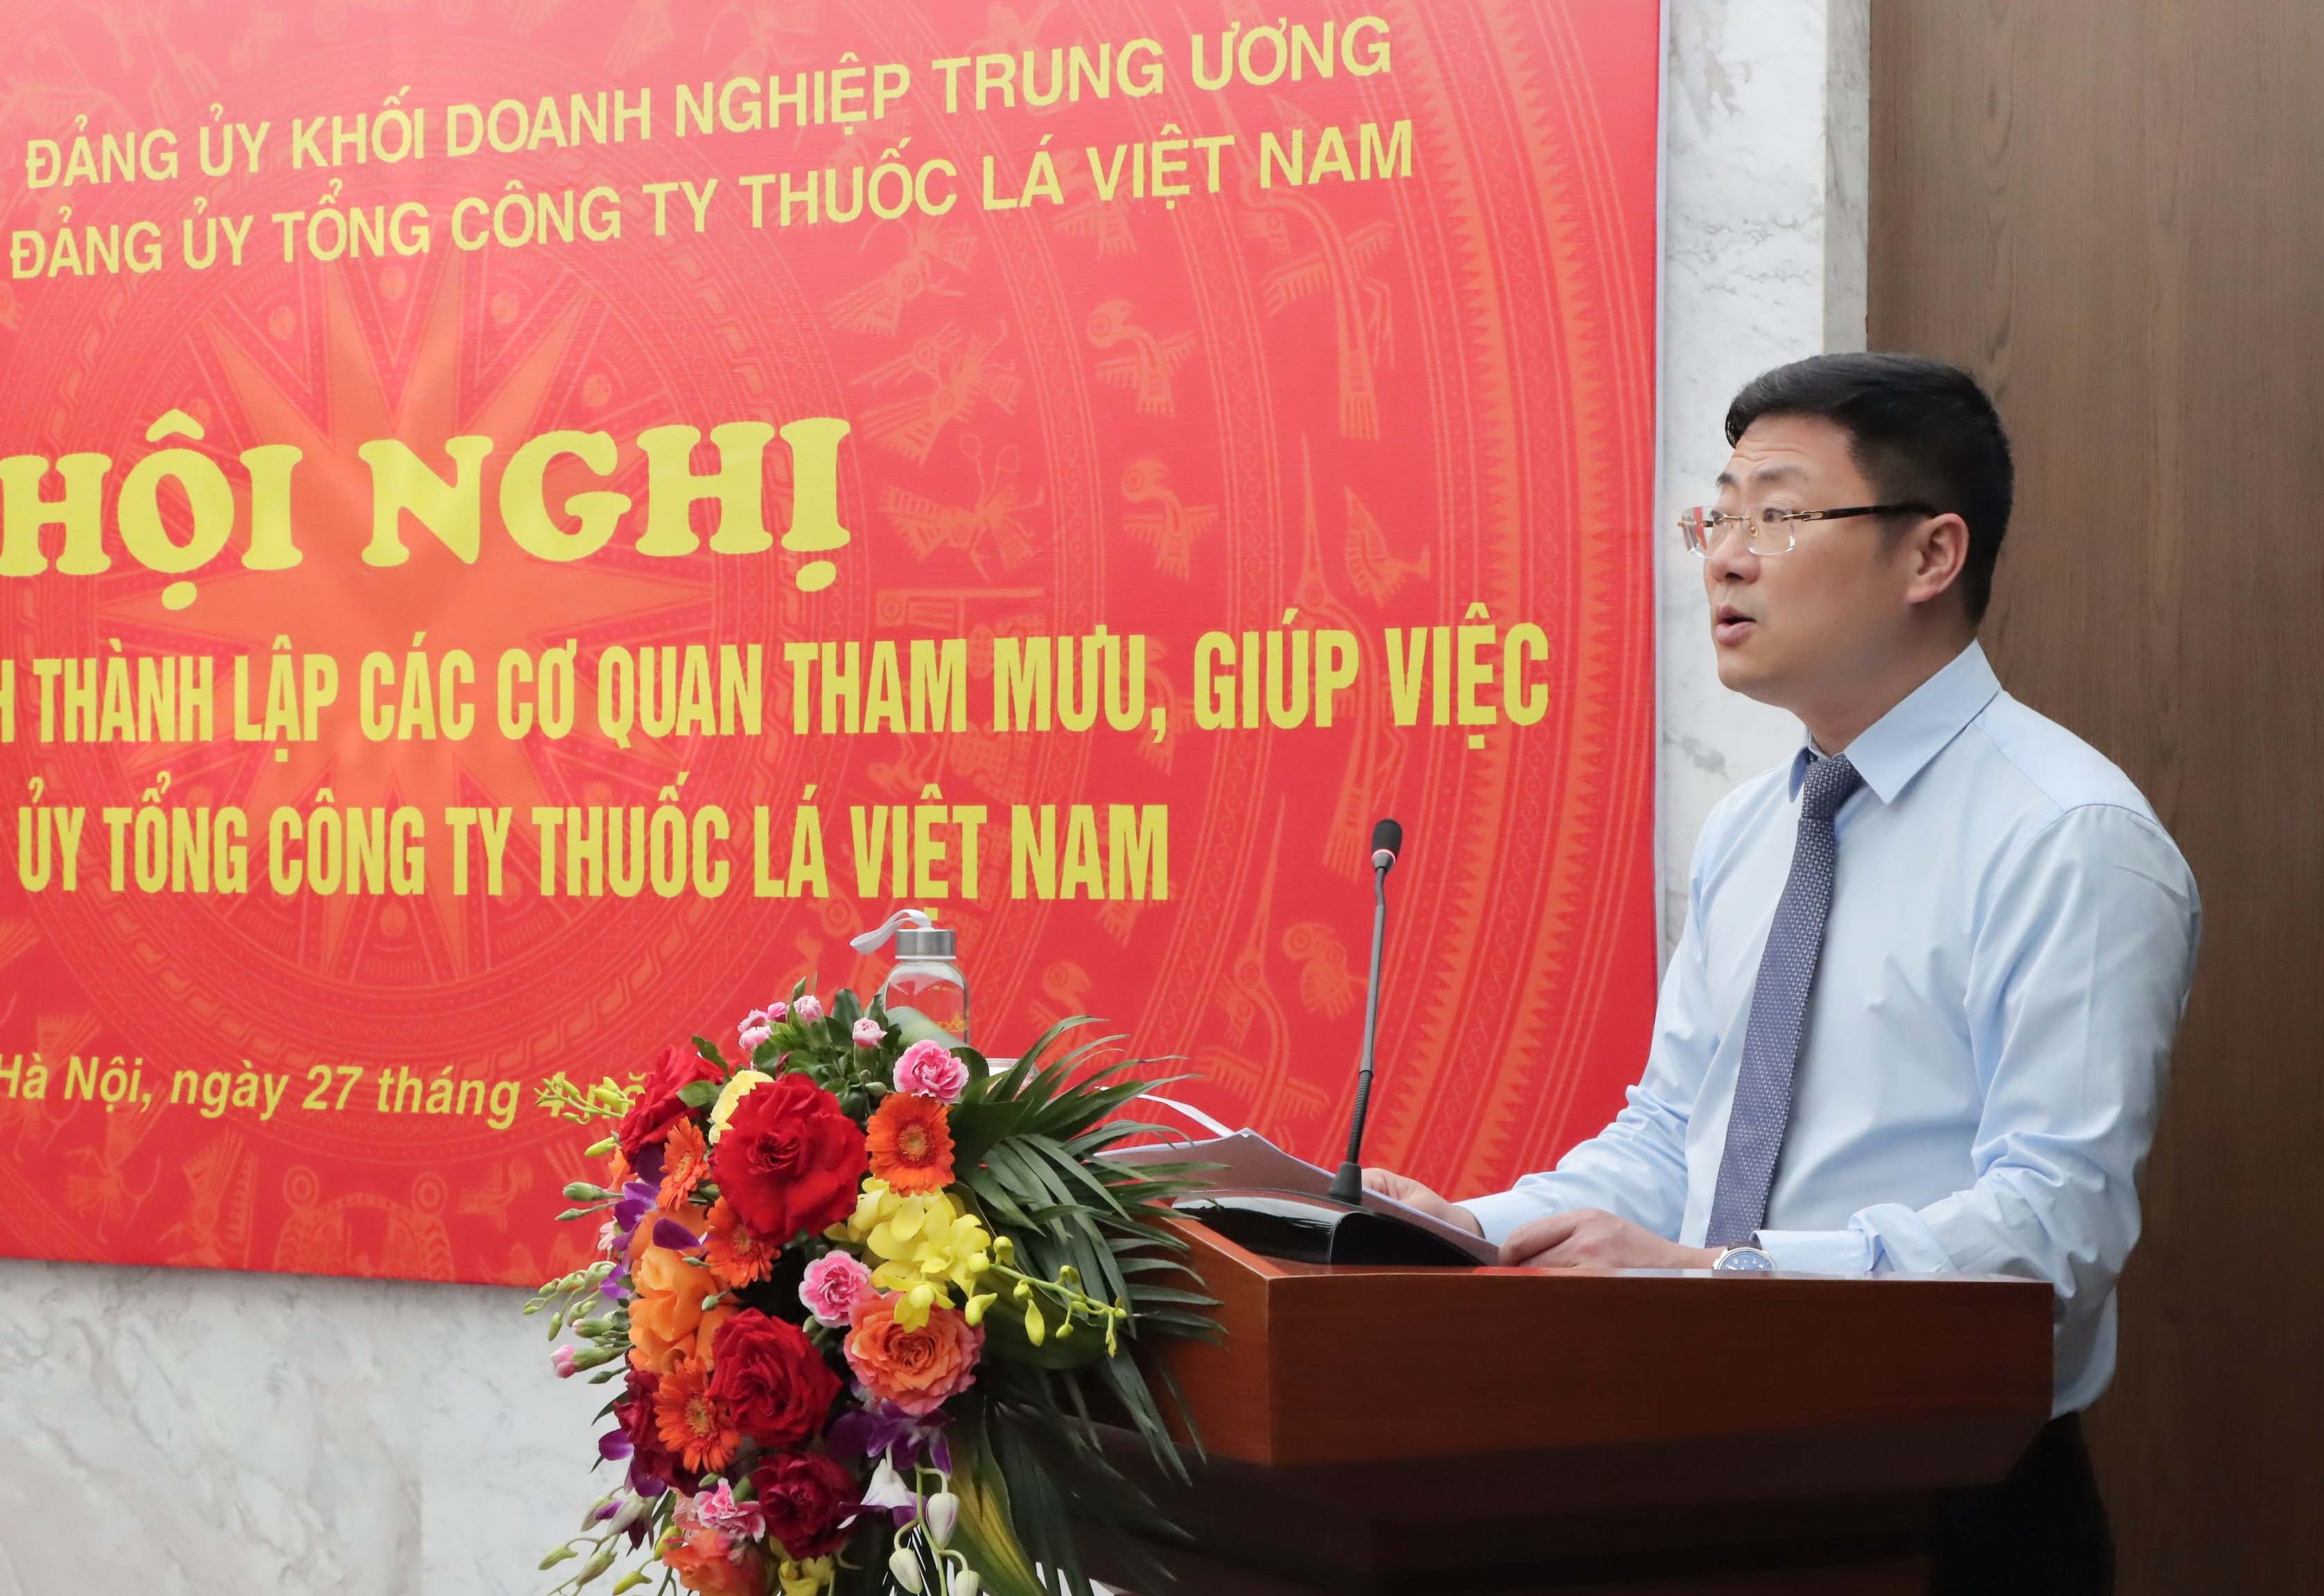 Thành lập các cơ quan tham mưu, giúp việc của Đảng ủy Tổng công ty Thuốc lá Việt Nam